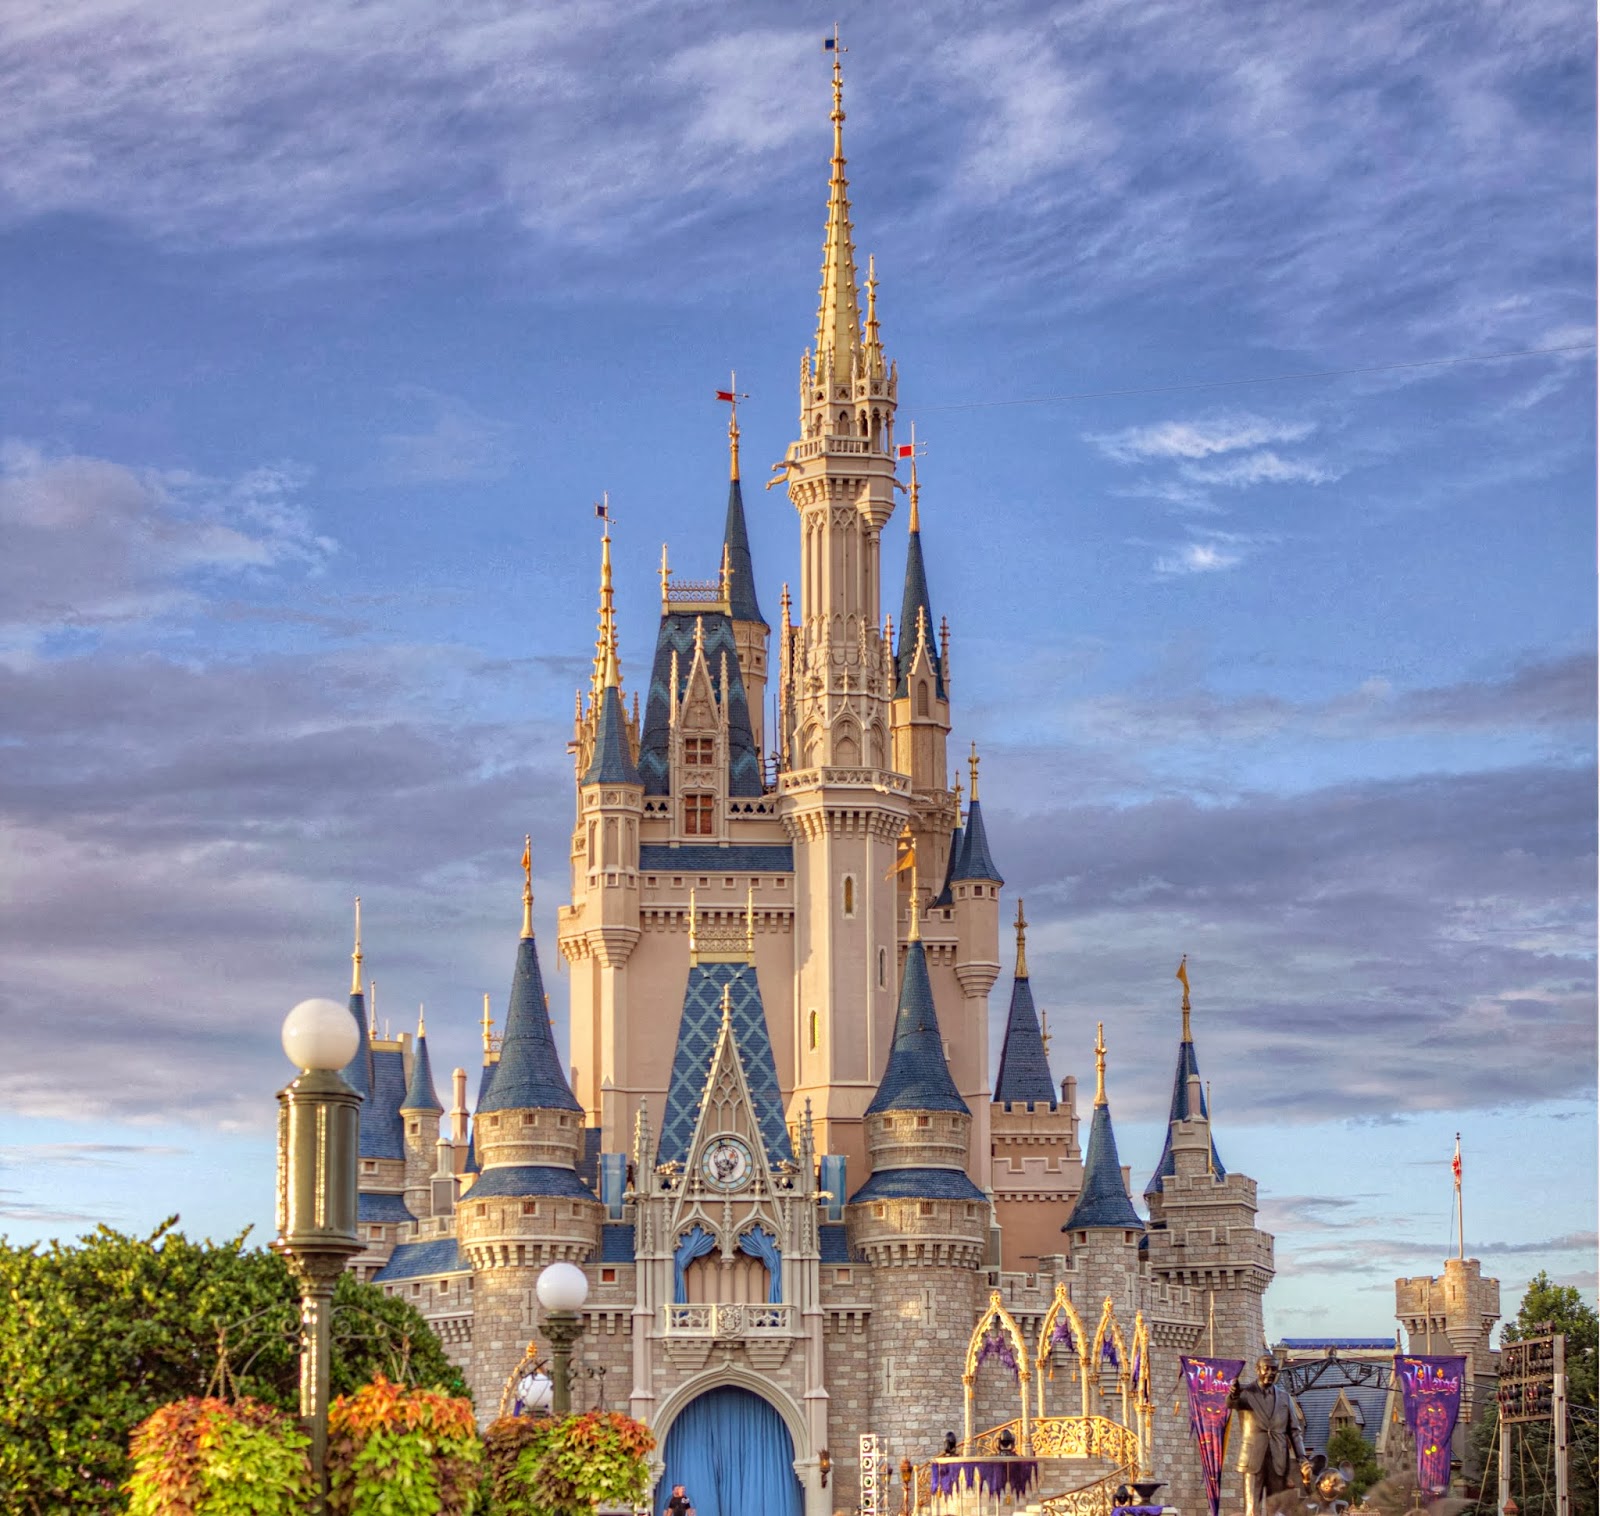 Cinderellas Castle in Disneys Magic Kingdom